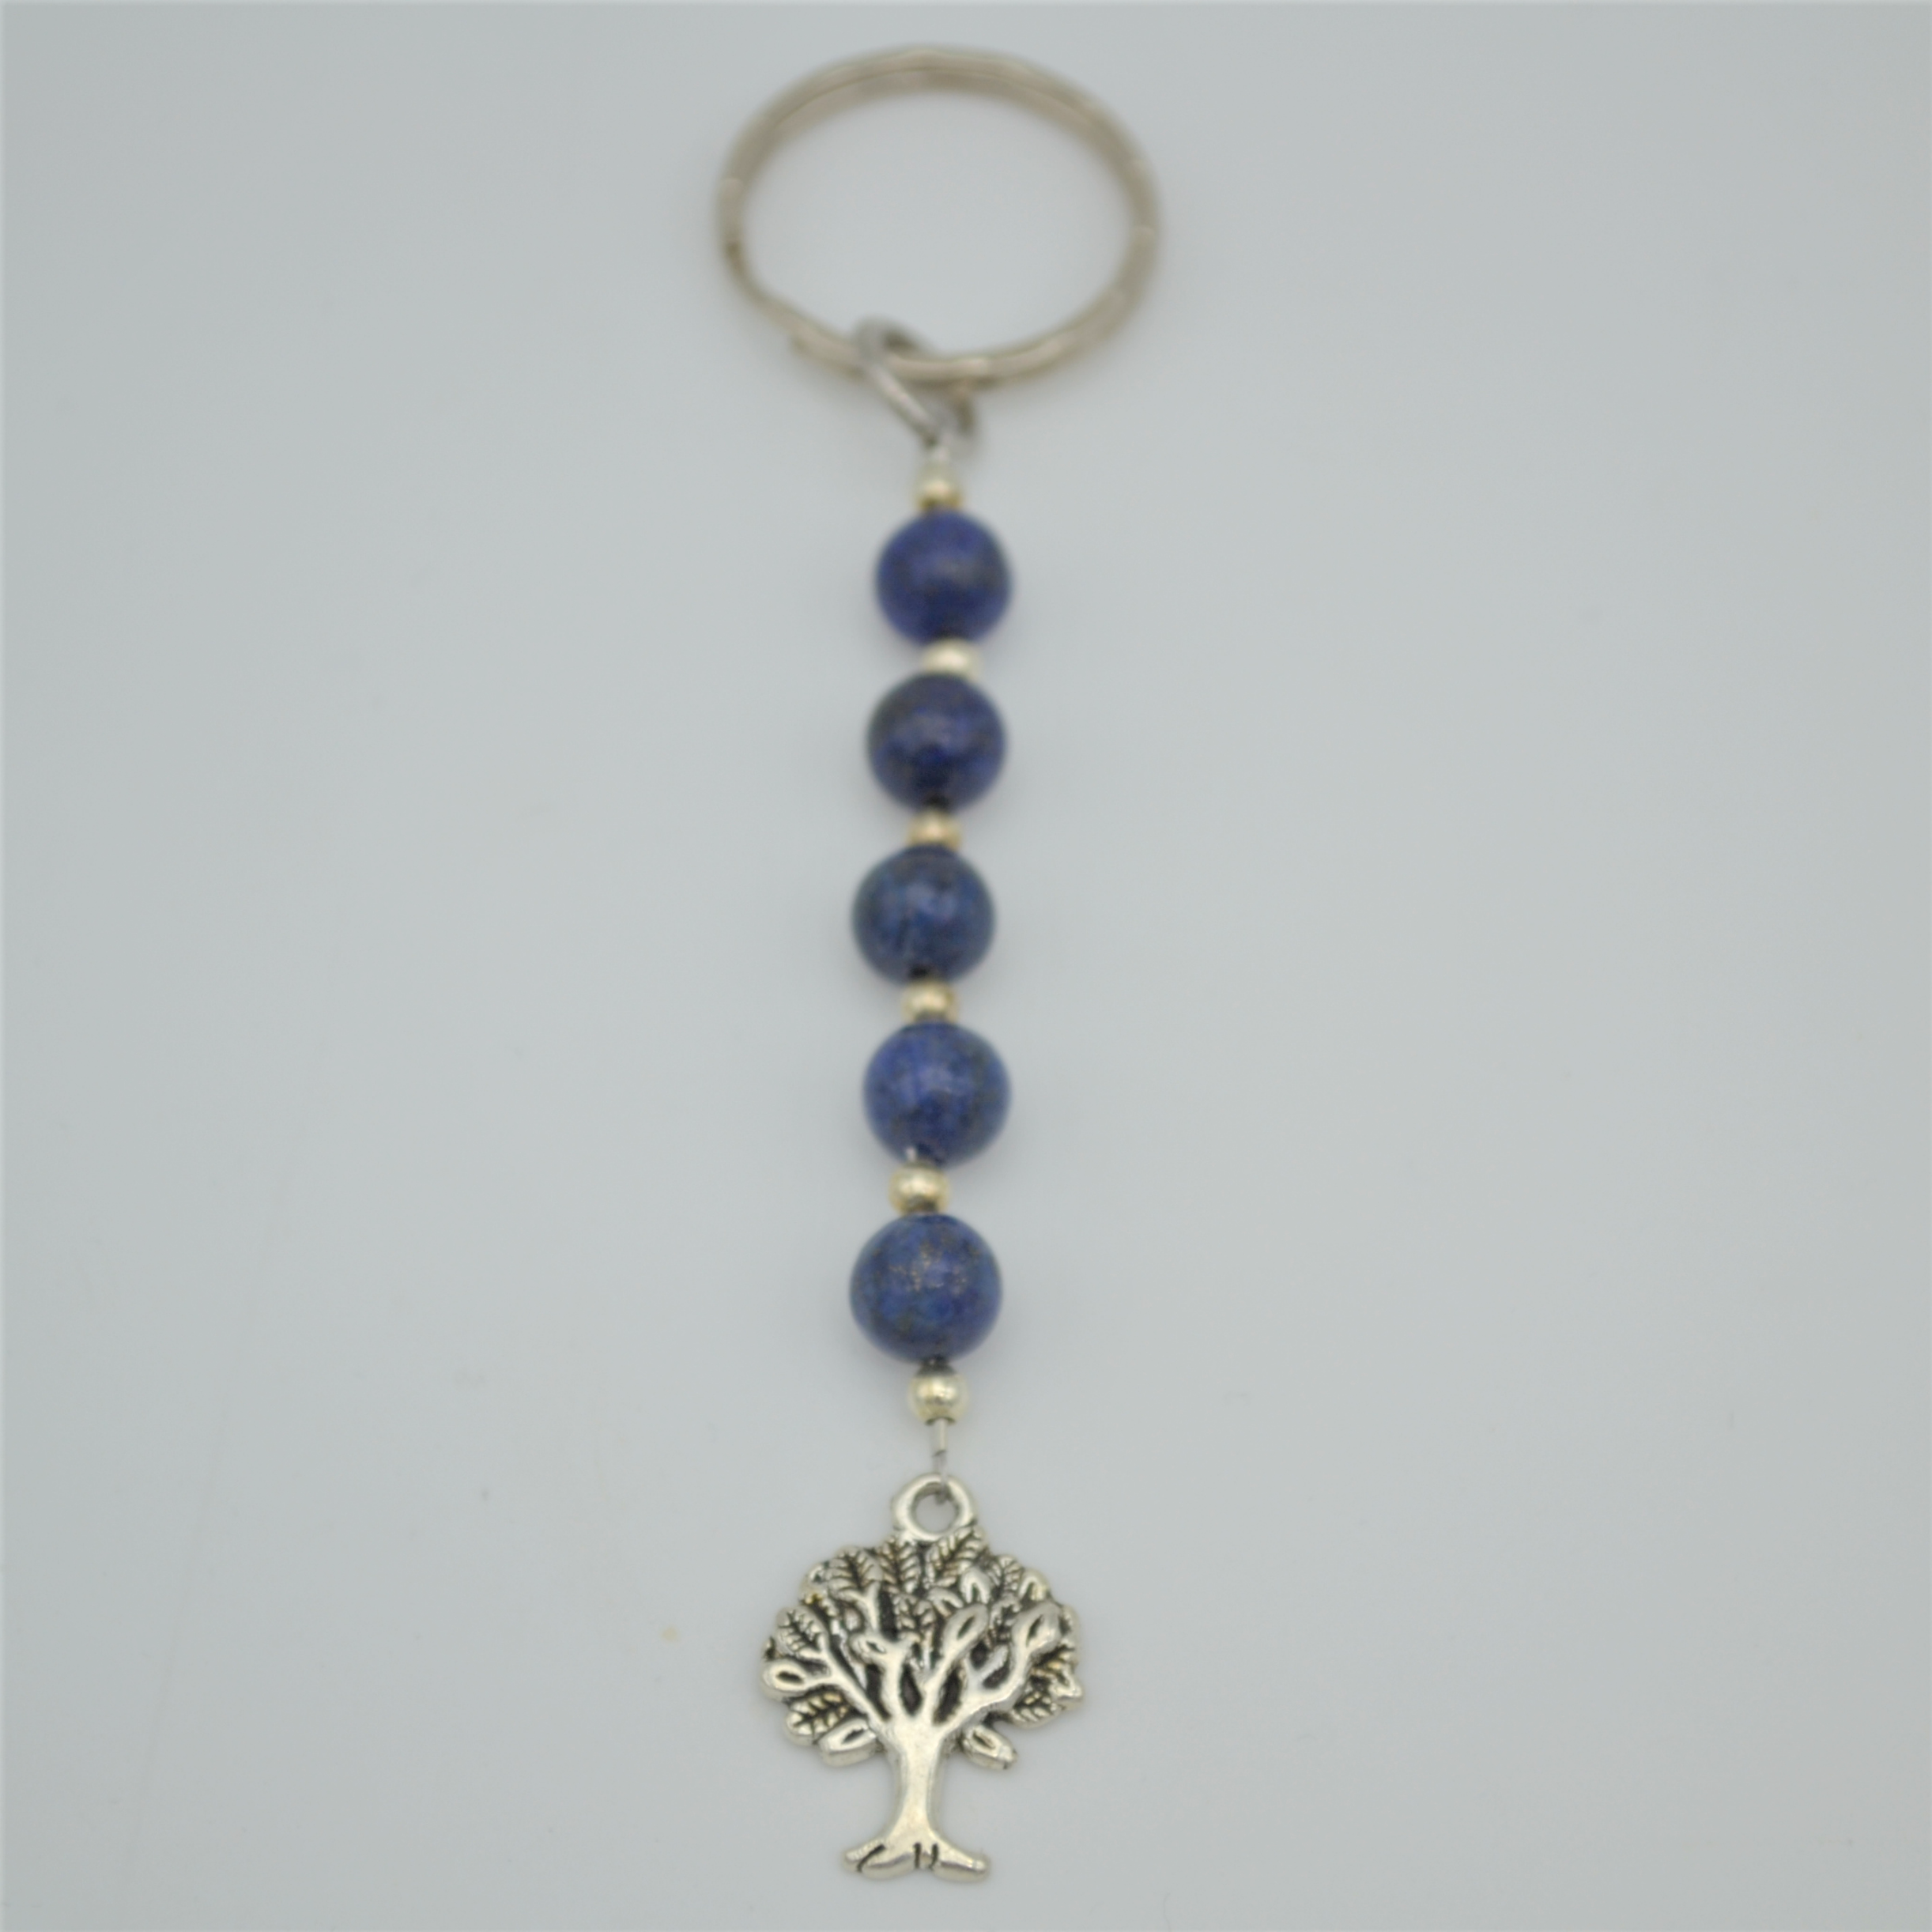 Fantaisie-Porte Clés- Lapis Lazuli-Arbre de Vie les bijoux de mel artisan bijoutier joaillier création sur mesure